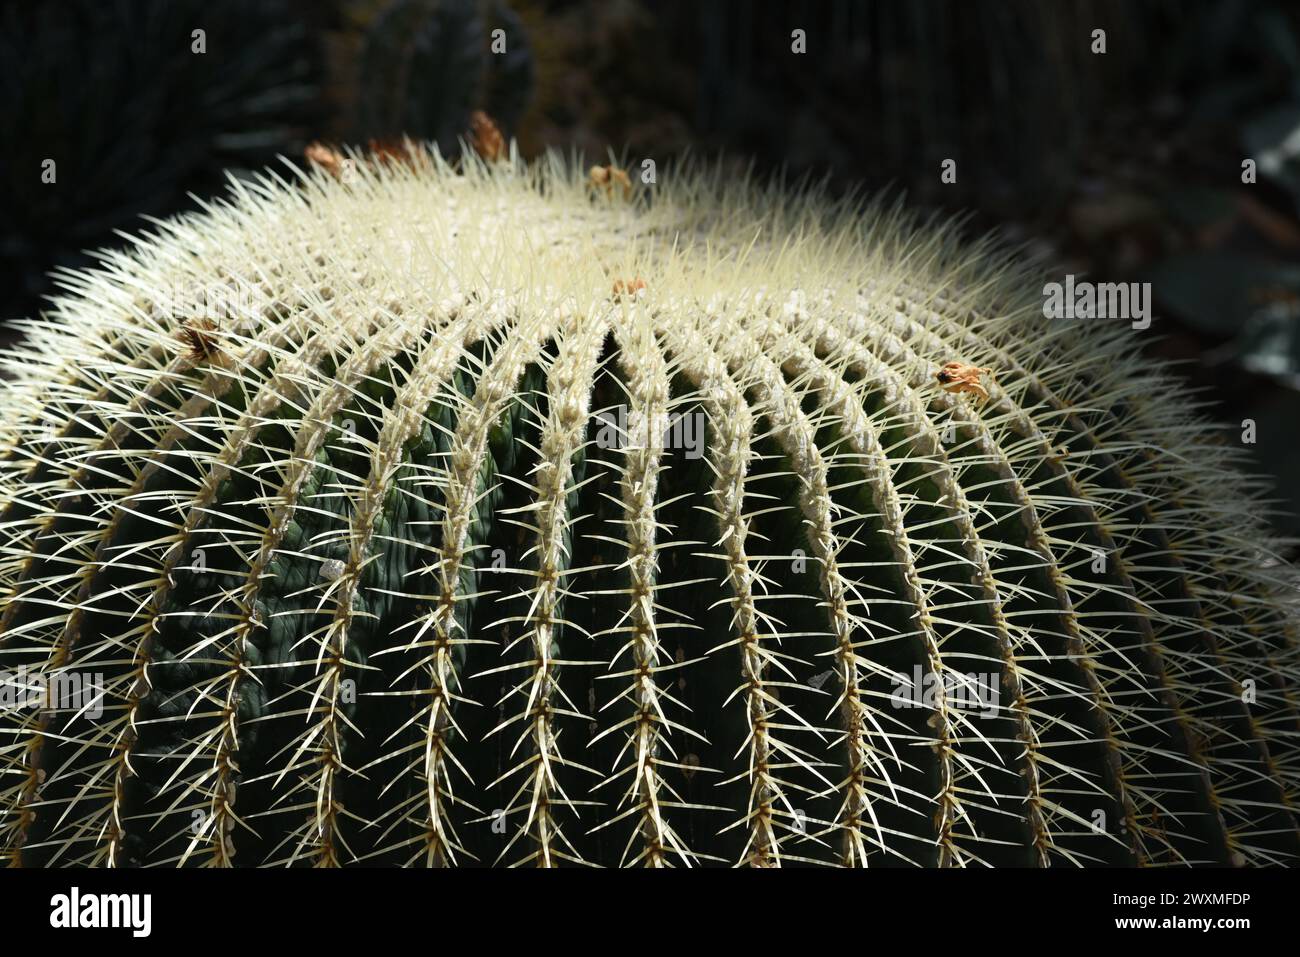 Schwiegermutterstuhl-Kaktus, Echinocactus grusonii, gehoert zu den besonders pflegeleichten Kakteen, der zudem noch eine interessante Optik aufweist. Banque D'Images